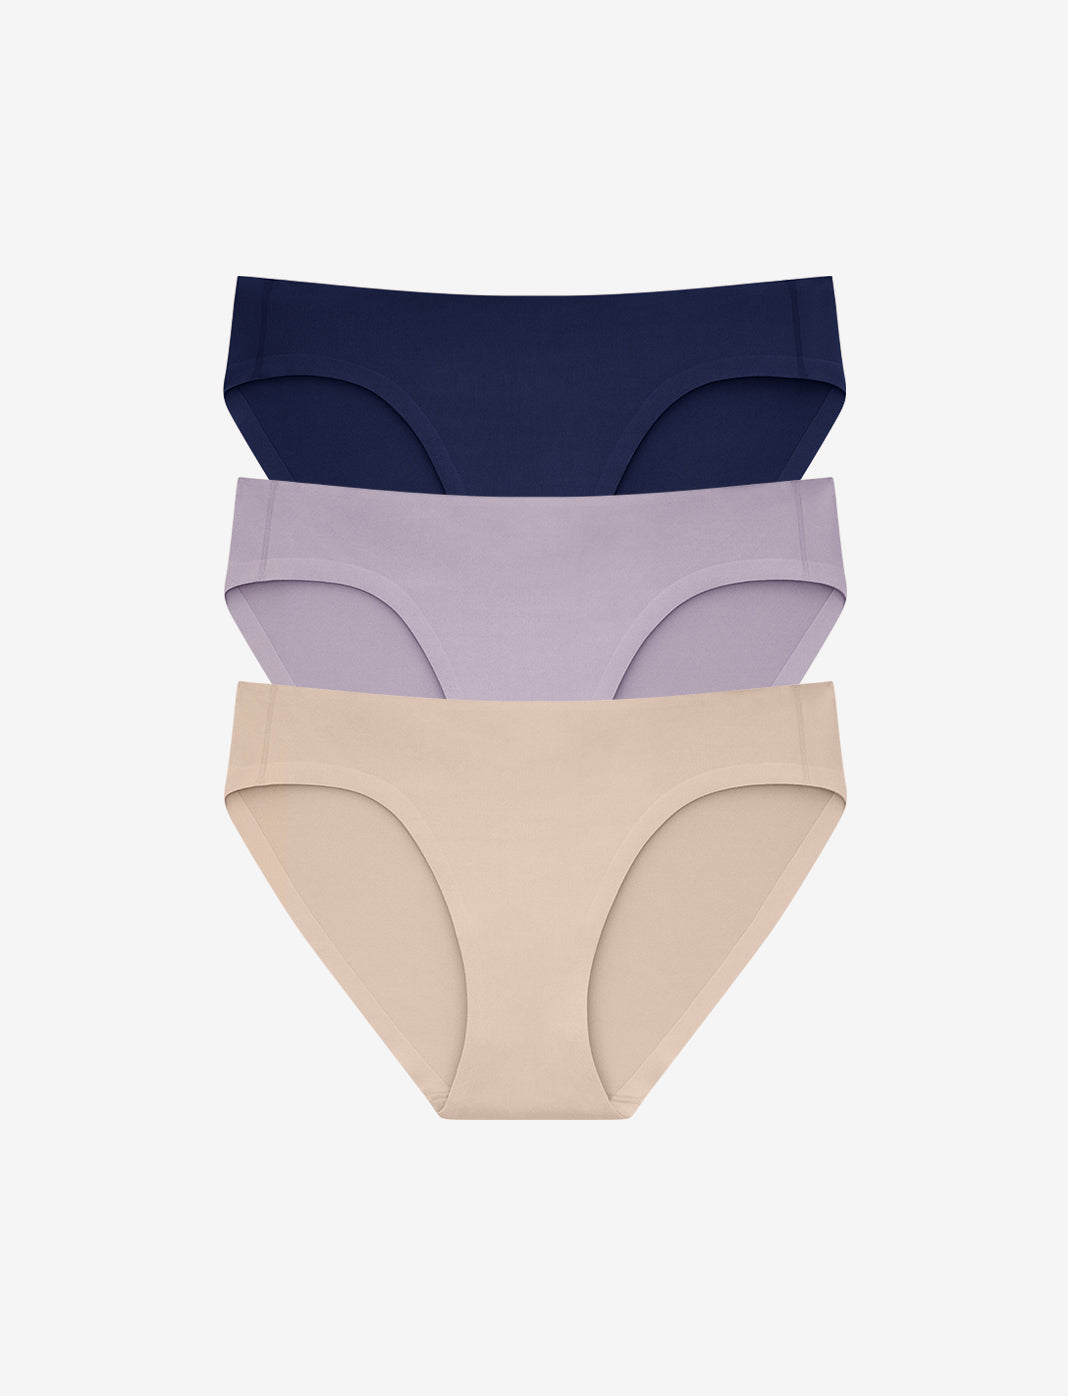 Cotton Brief Seamless Underwear Woman Womens Seamless Underwear